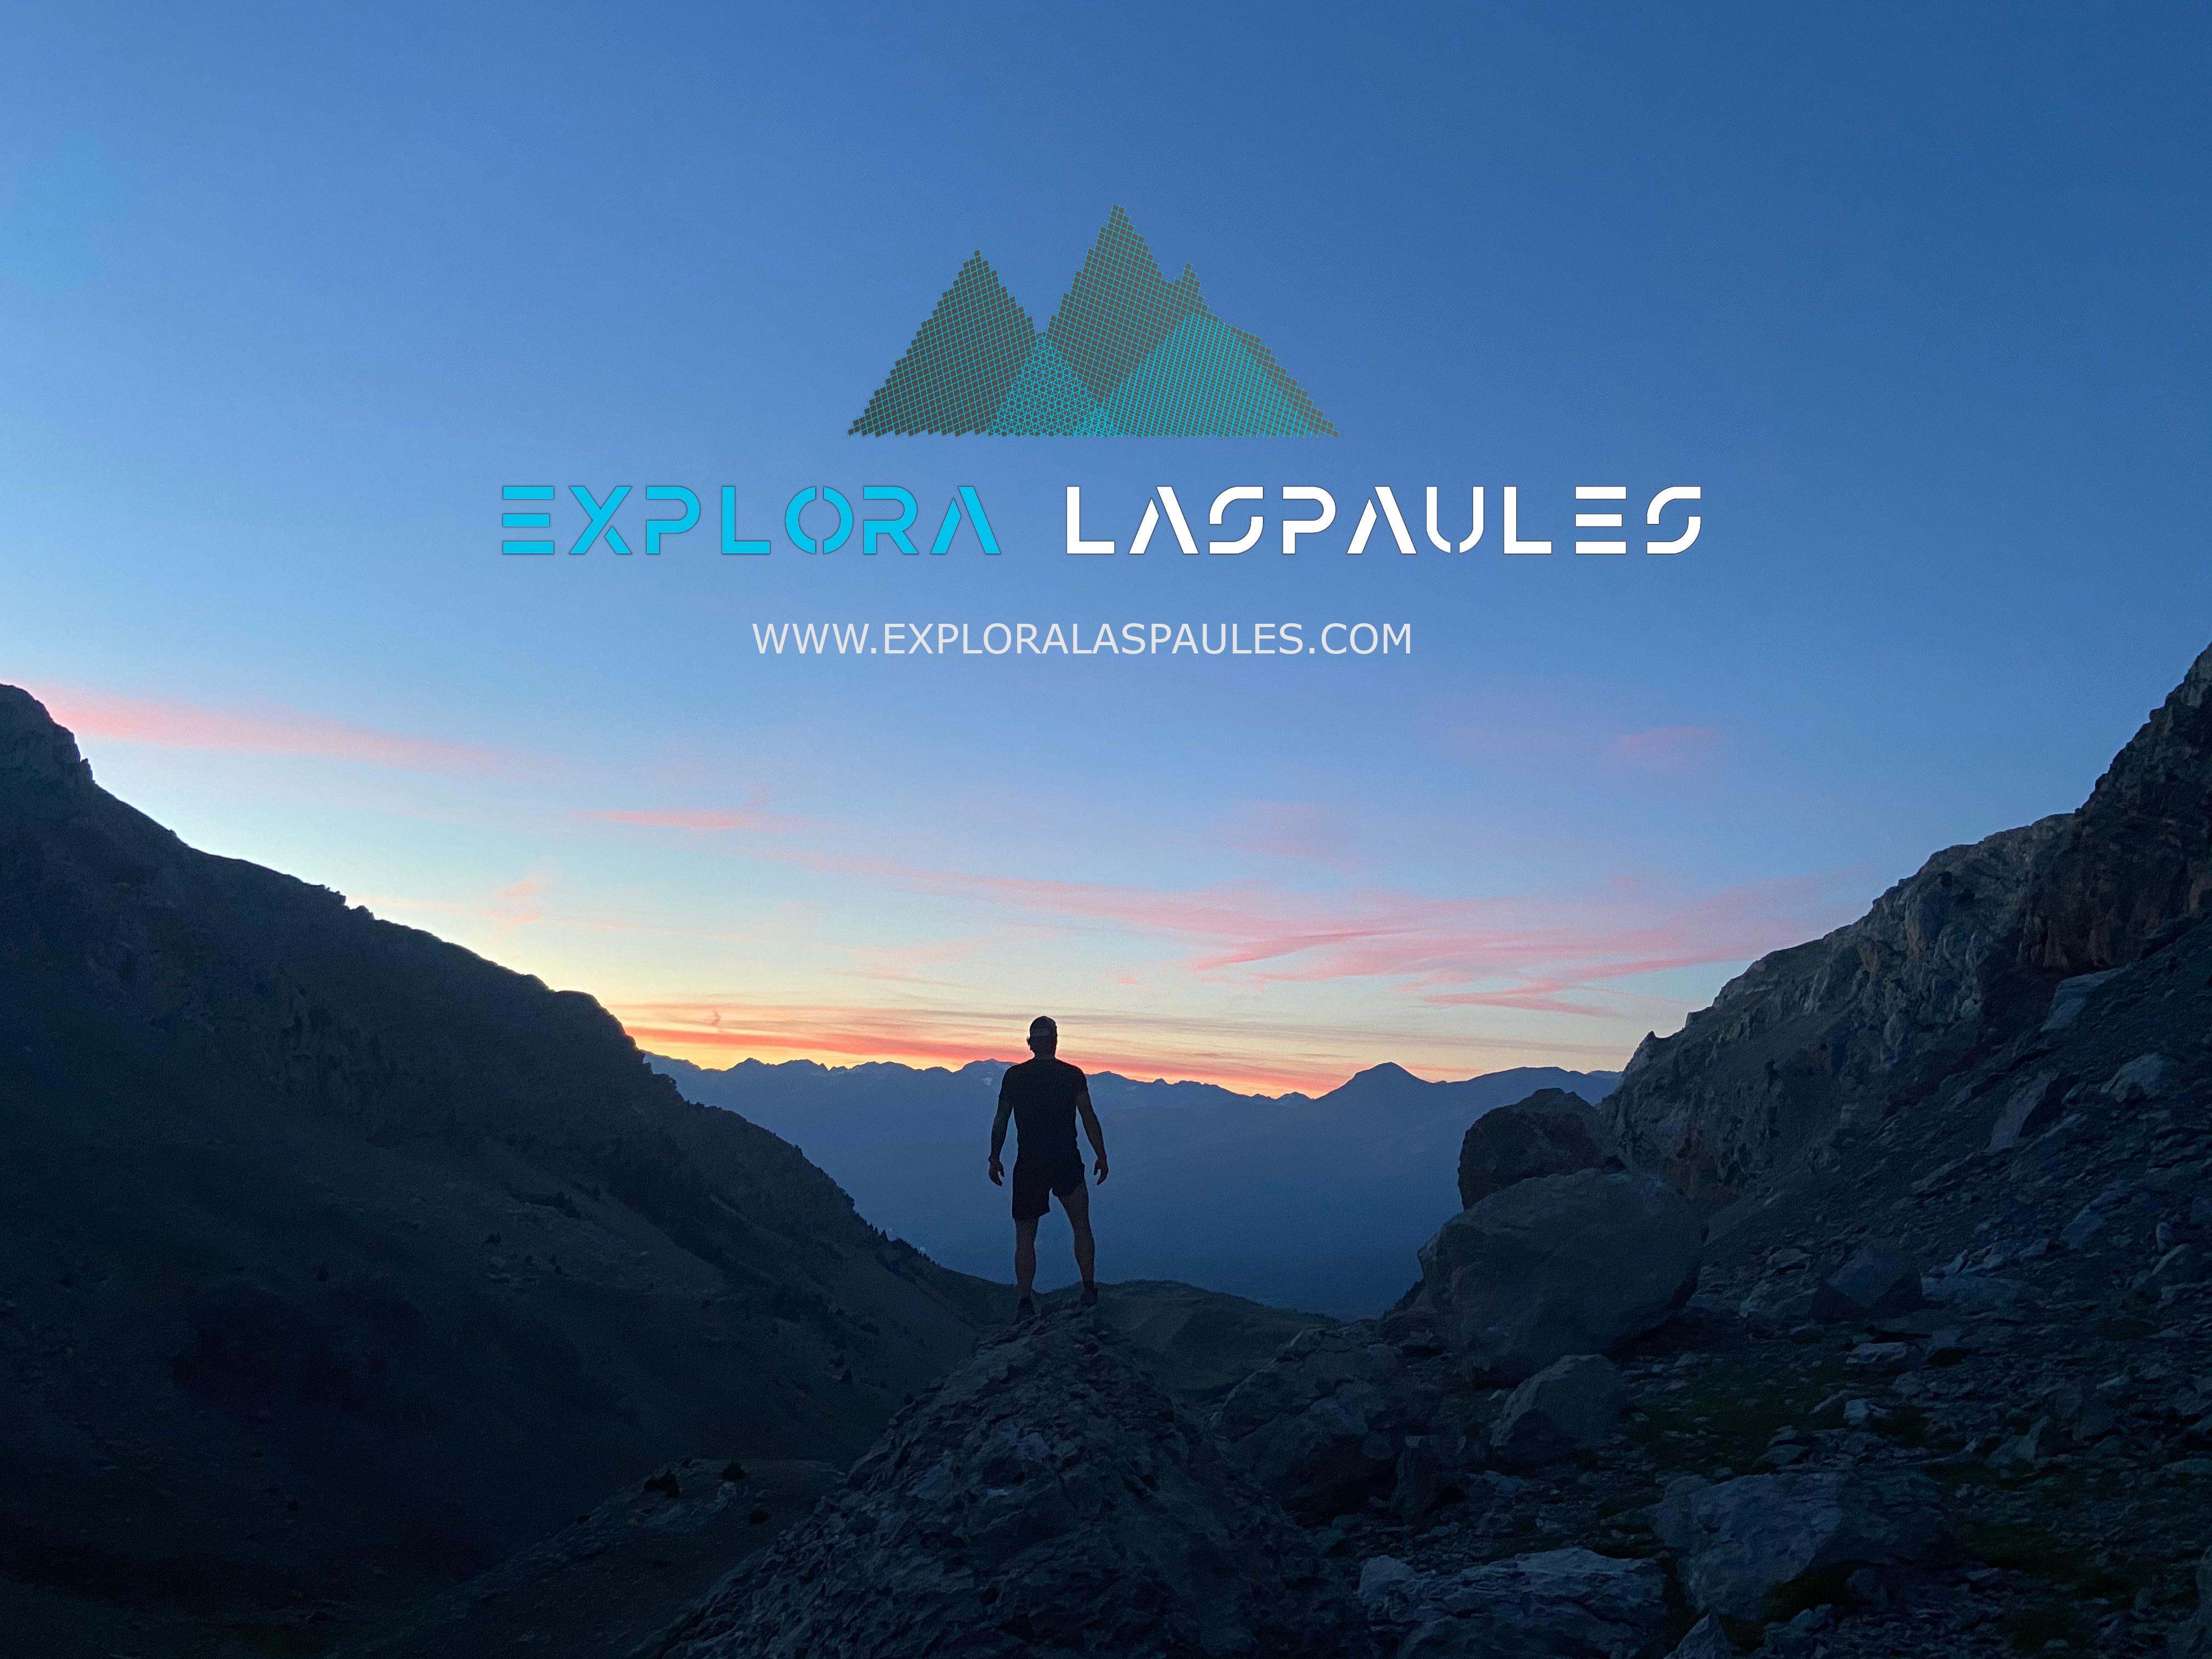 www.exploralaspaules.com